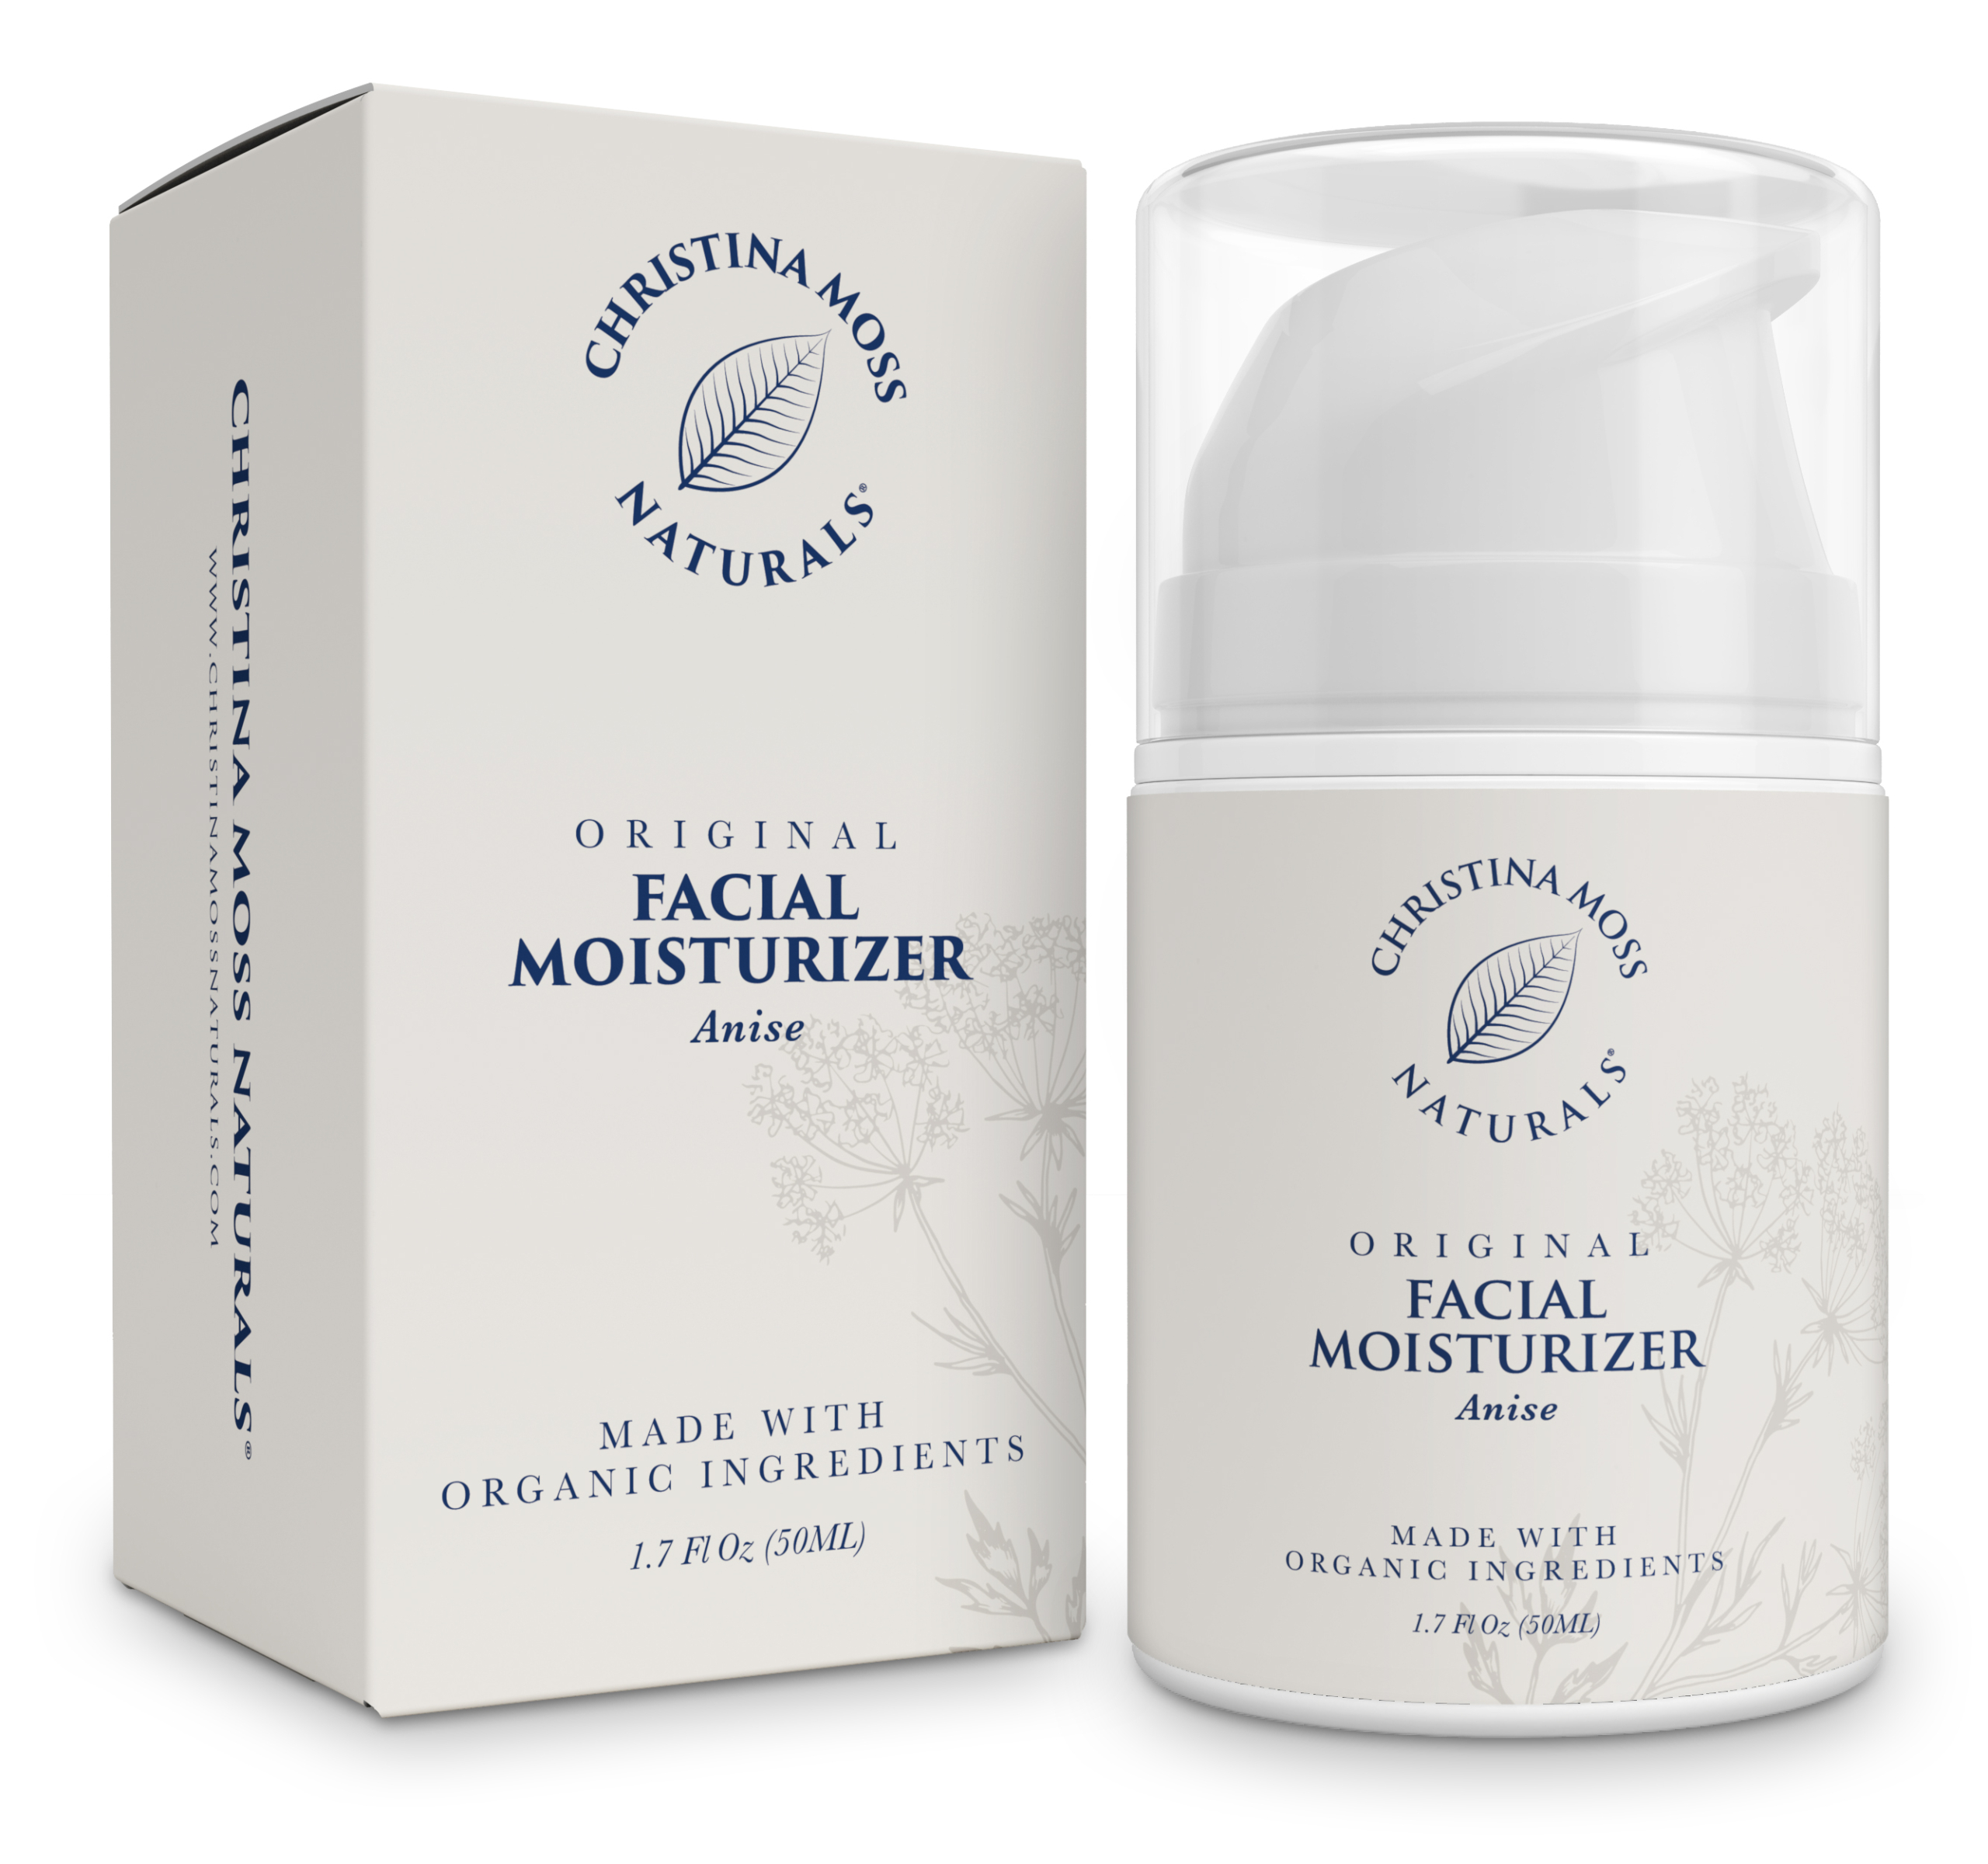 Best organic facial moisturizer